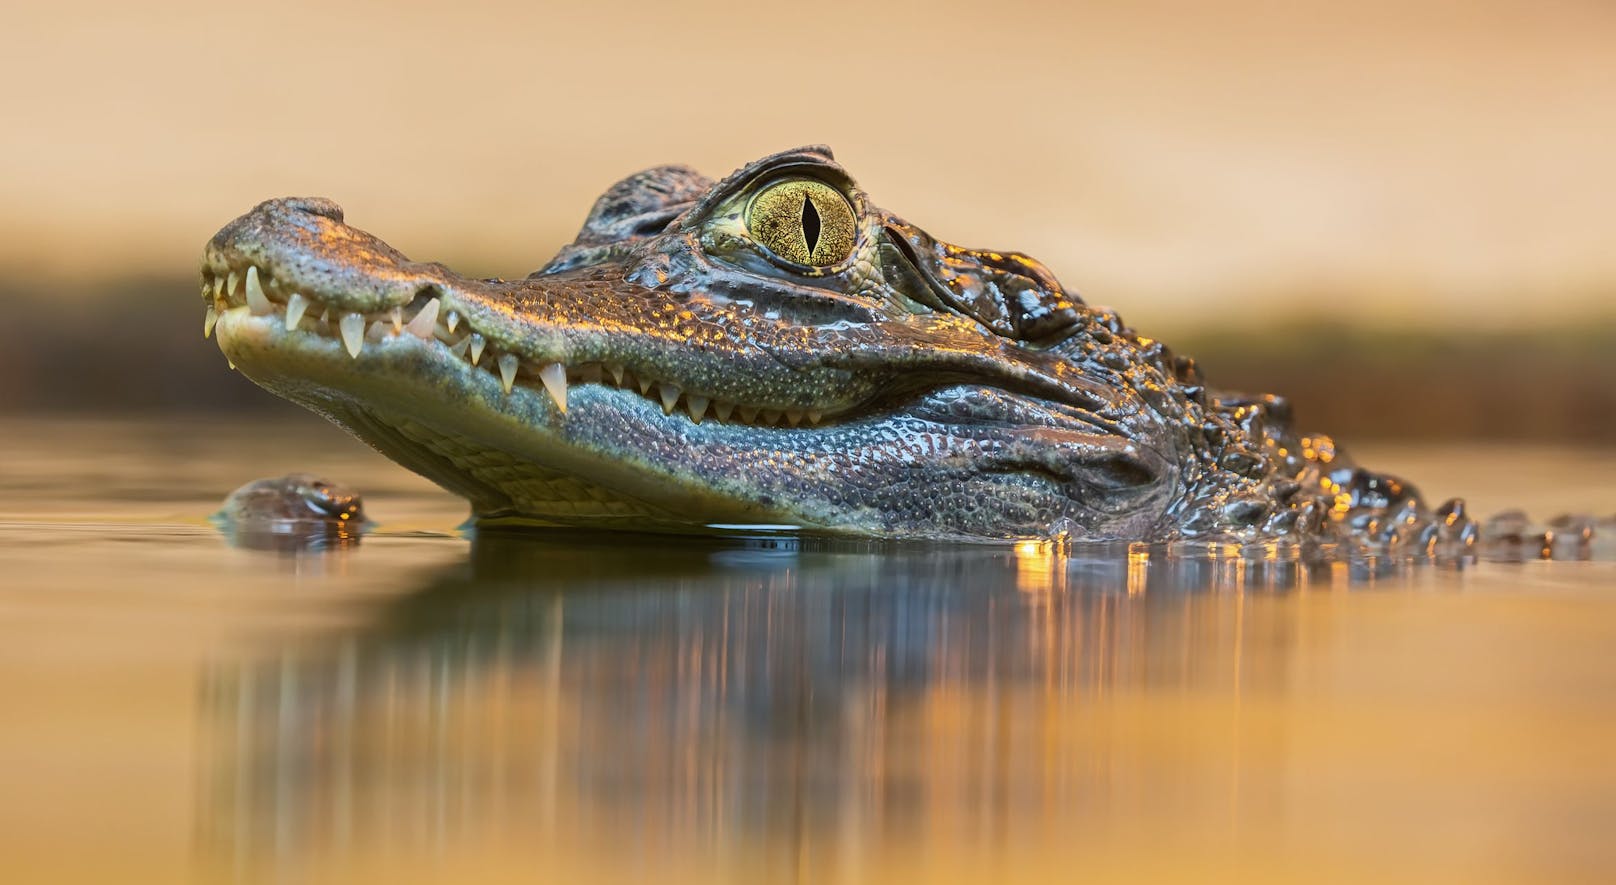 Das "göttliche" Krokodil "Babia" starb mit über 80 Jahren. Angeblich war es Vegetarier. 